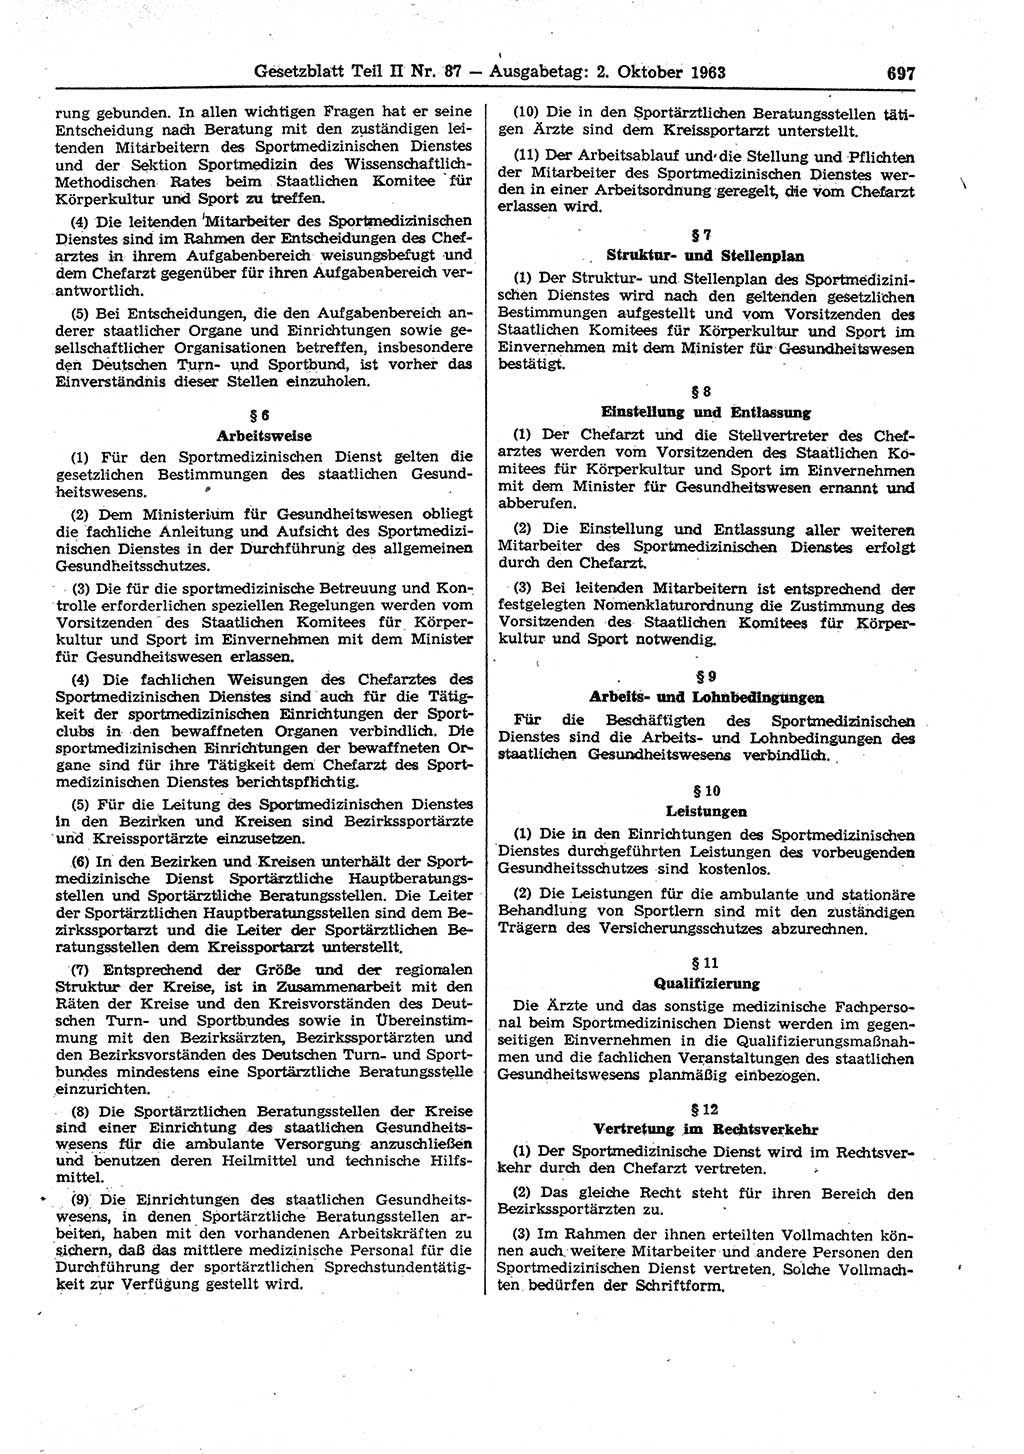 Gesetzblatt (GBl.) der Deutschen Demokratischen Republik (DDR) Teil ⅠⅠ 1963, Seite 697 (GBl. DDR ⅠⅠ 1963, S. 697)